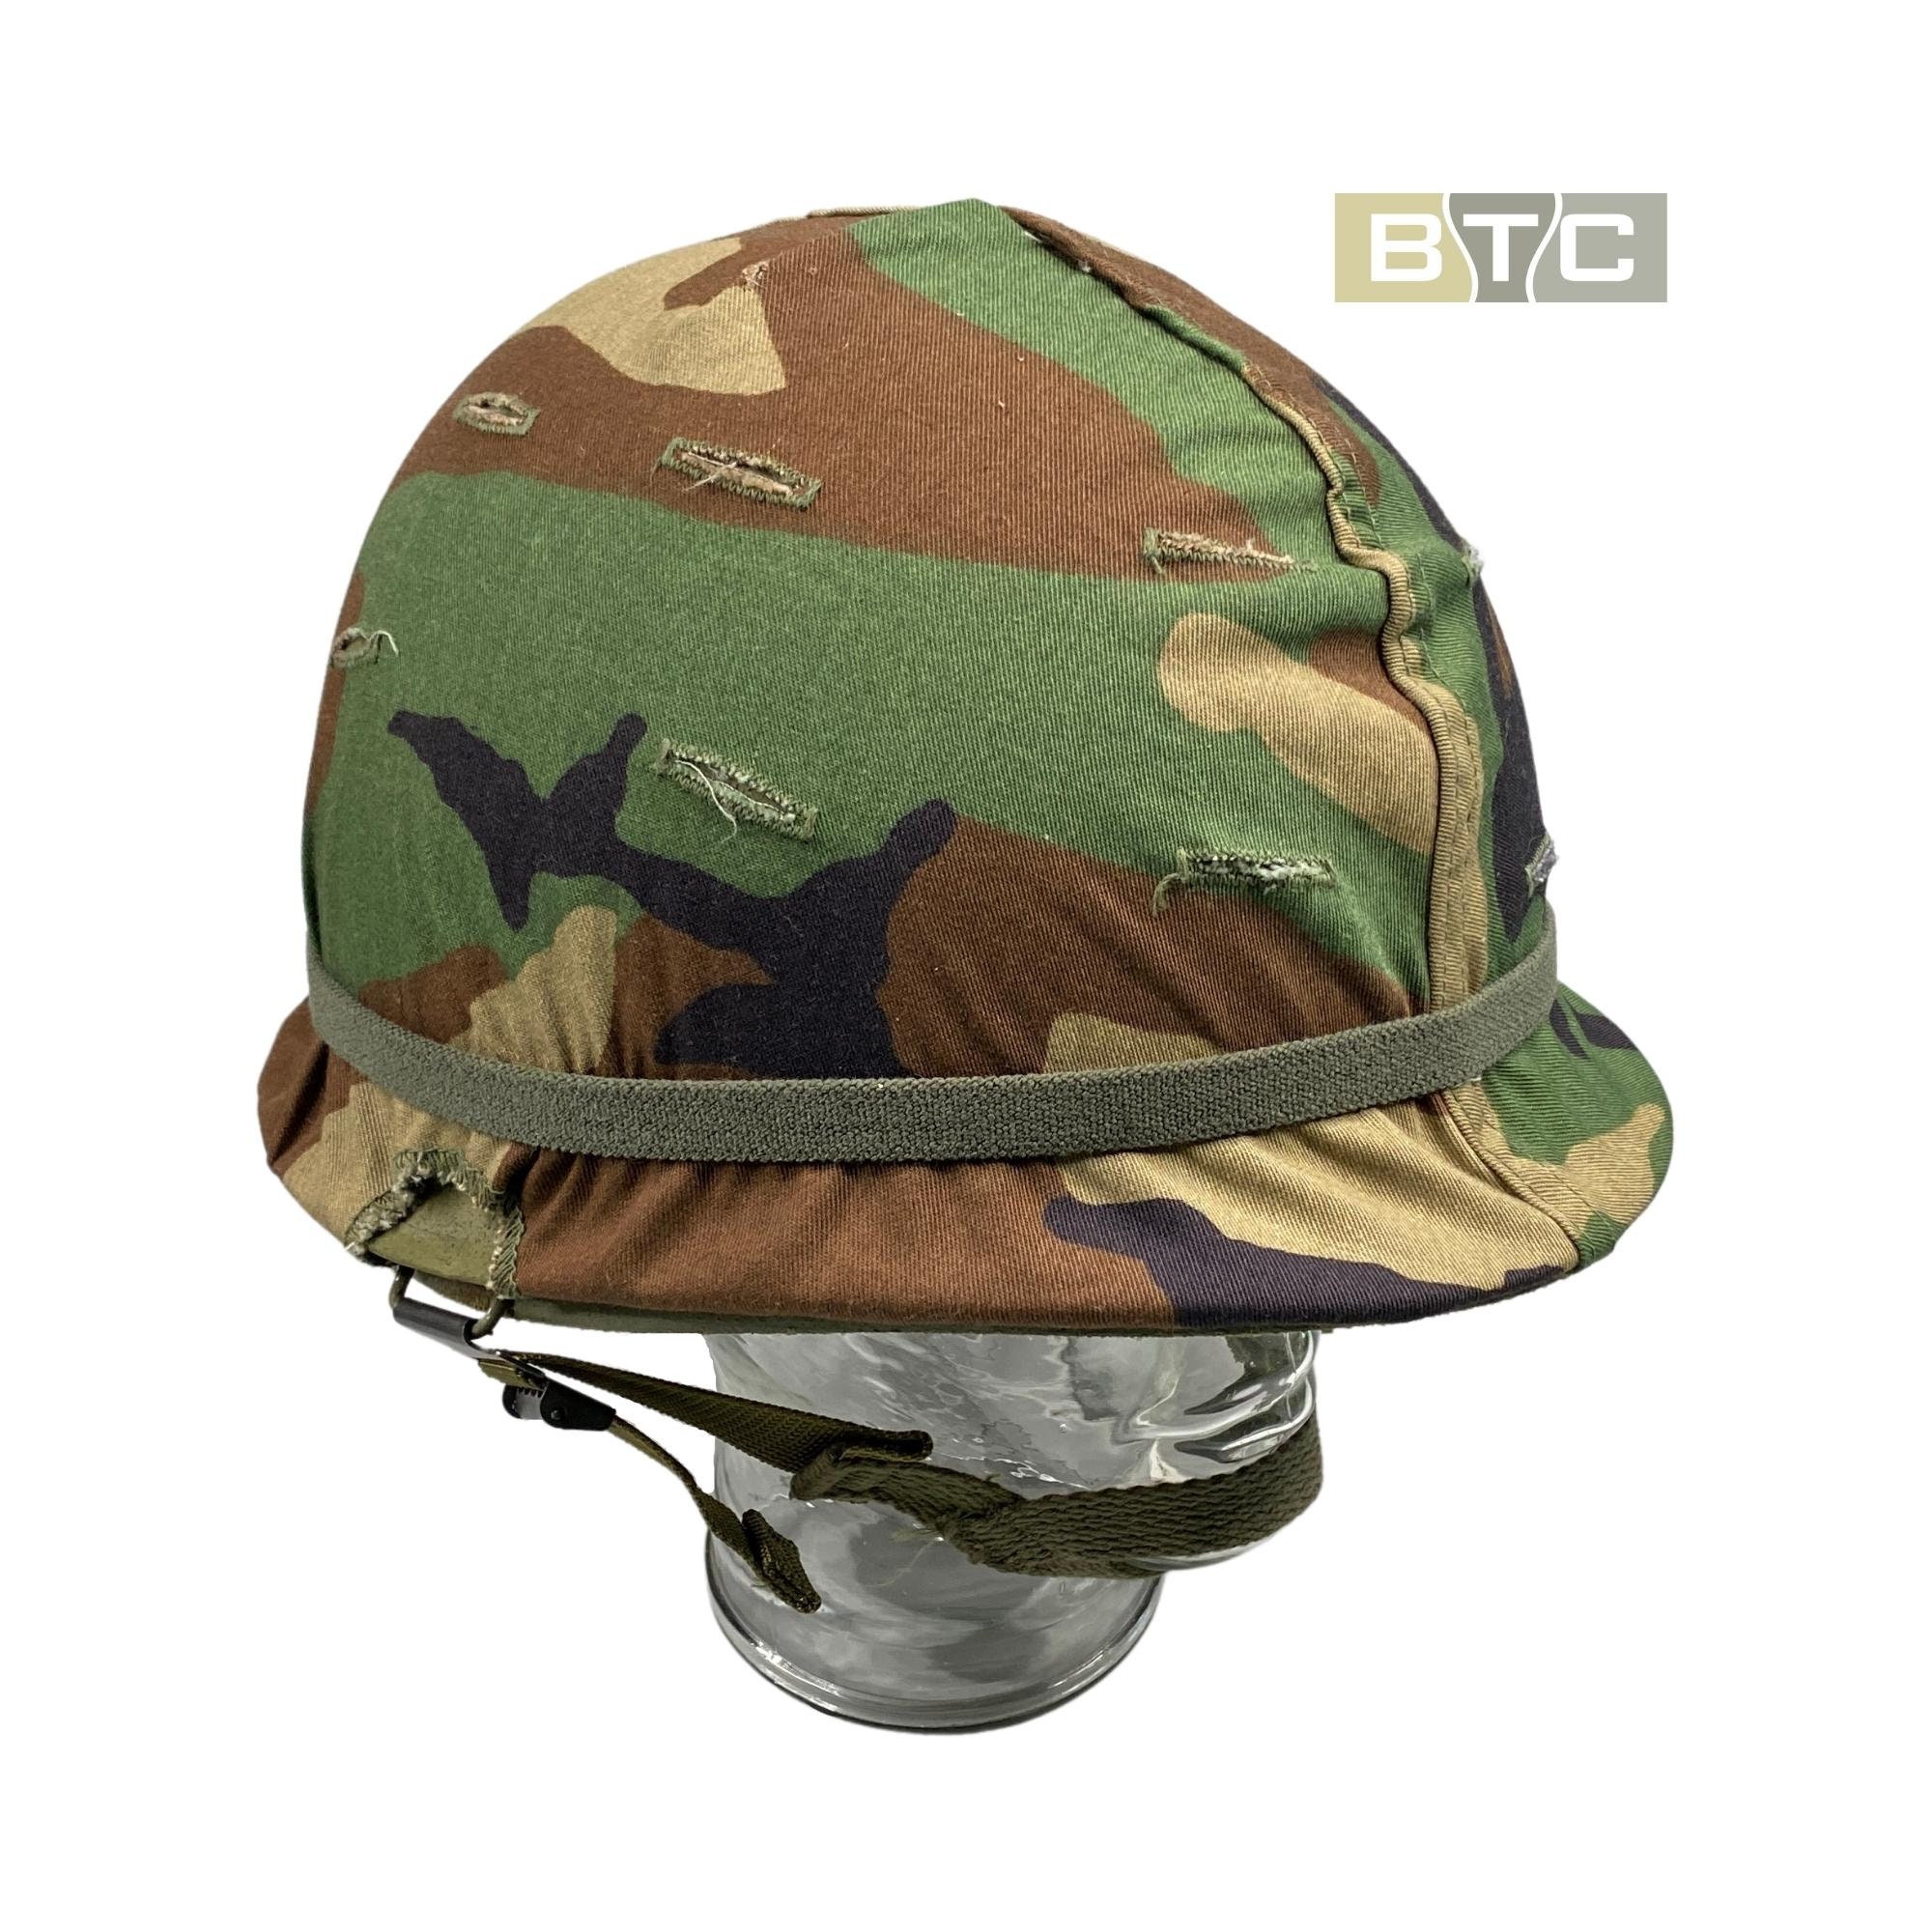 Us Army Vietnam War Transitional M1 Stalen Gevechtshelm met Liner & Mitchell Cover Accessoires Hoeden & petten Helmen Militaire helmen Origineel 